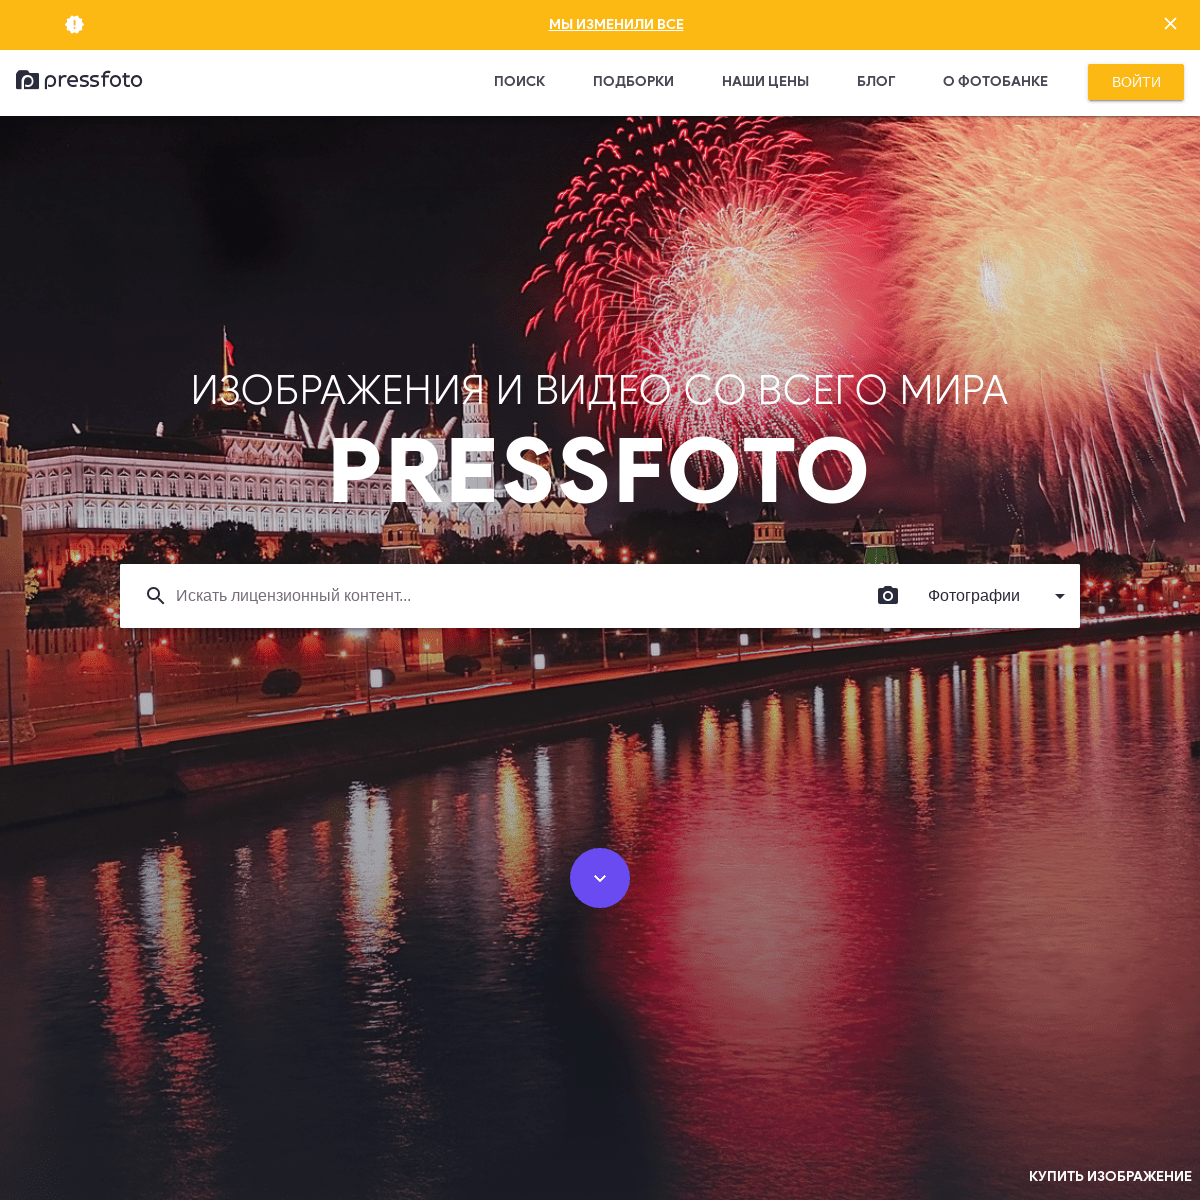 Фотобанк PressFoto – купить фотографии или продать изображения на официальном сайте фотобанка